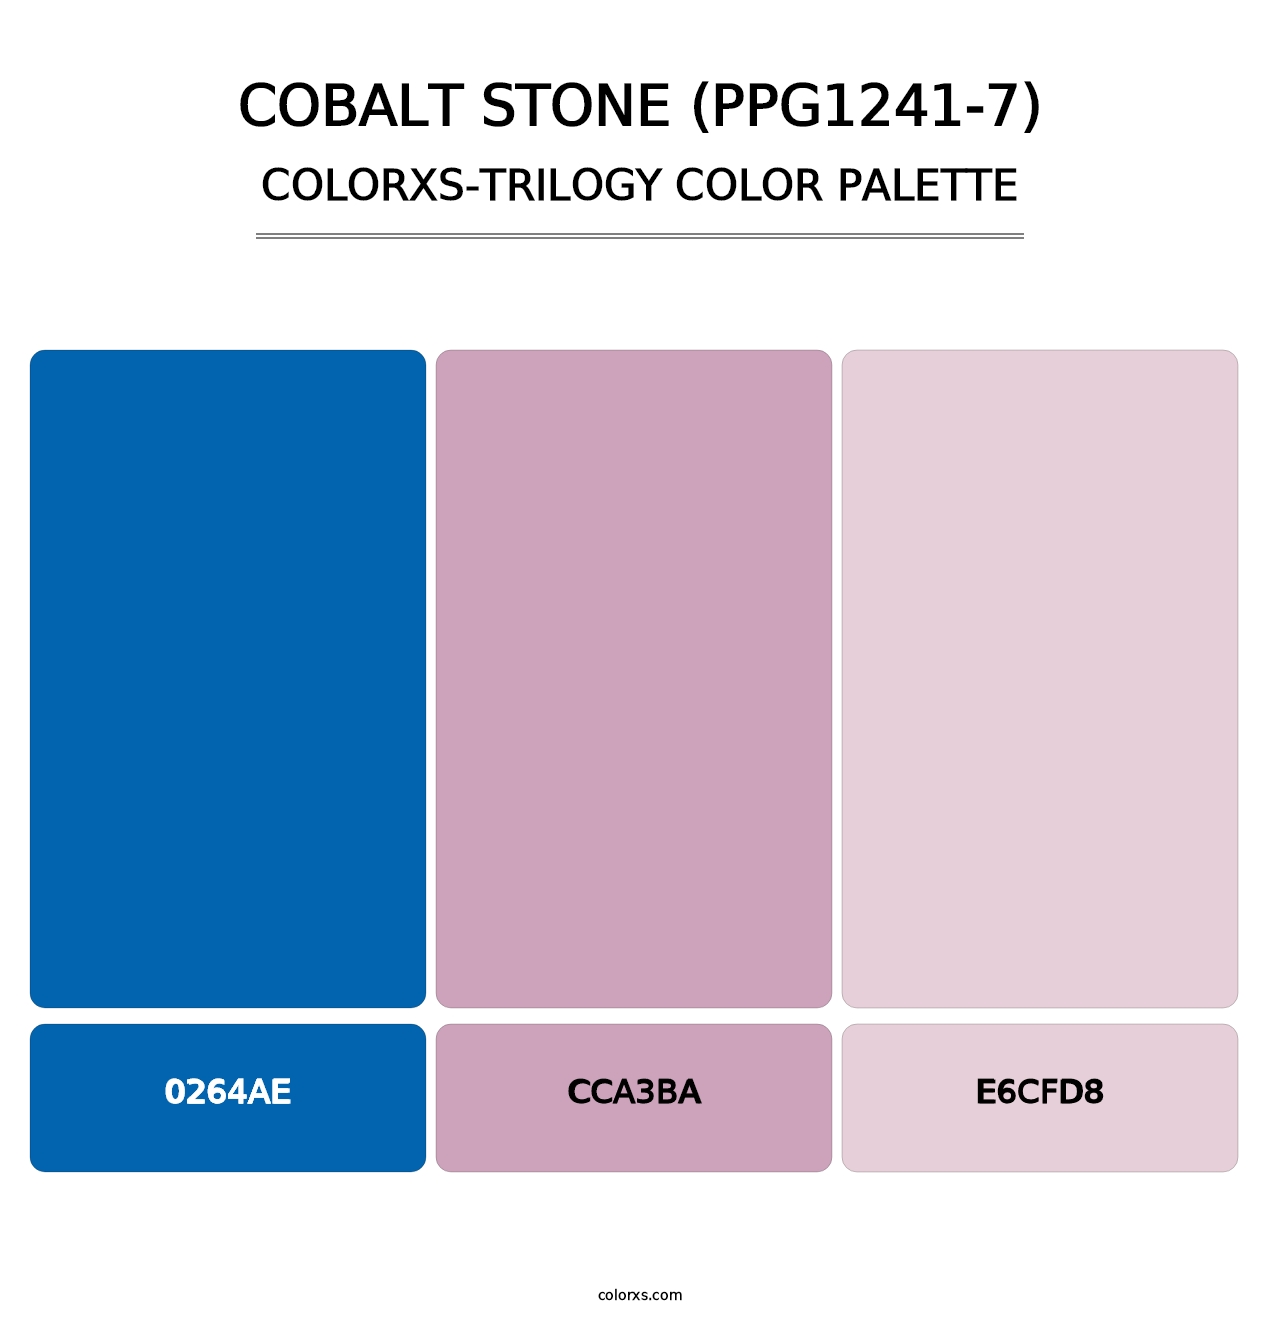 Cobalt Stone (PPG1241-7) - Colorxs Trilogy Palette